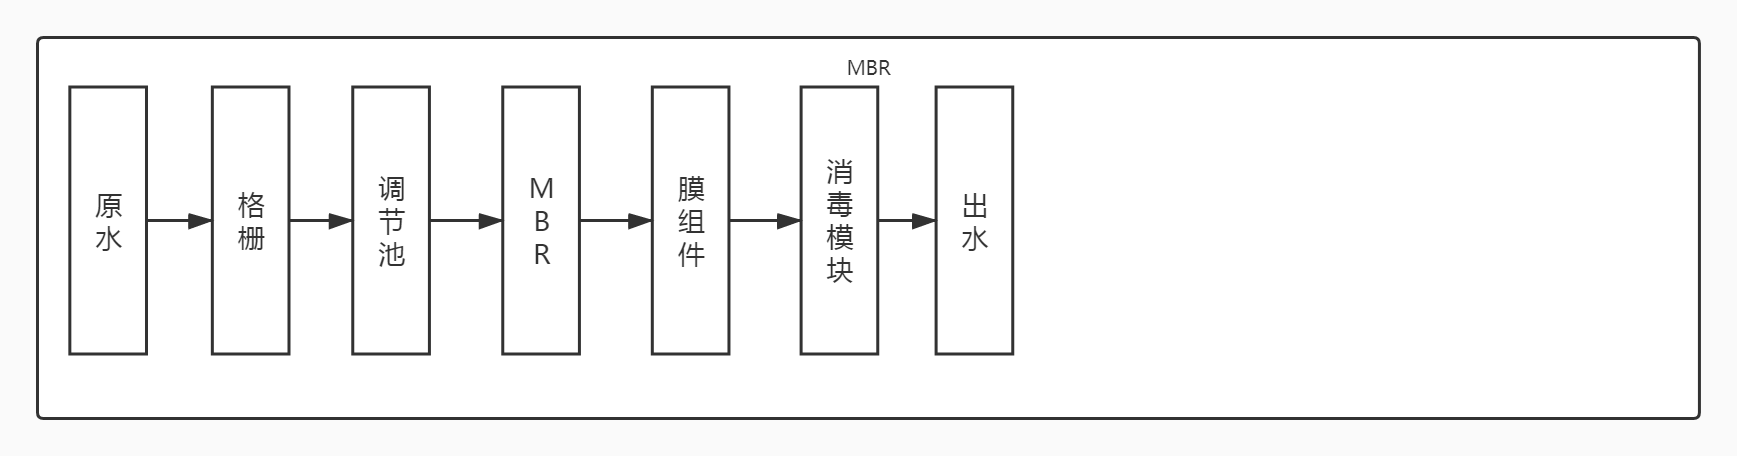 MBR工艺处理医疗污水工艺流程图